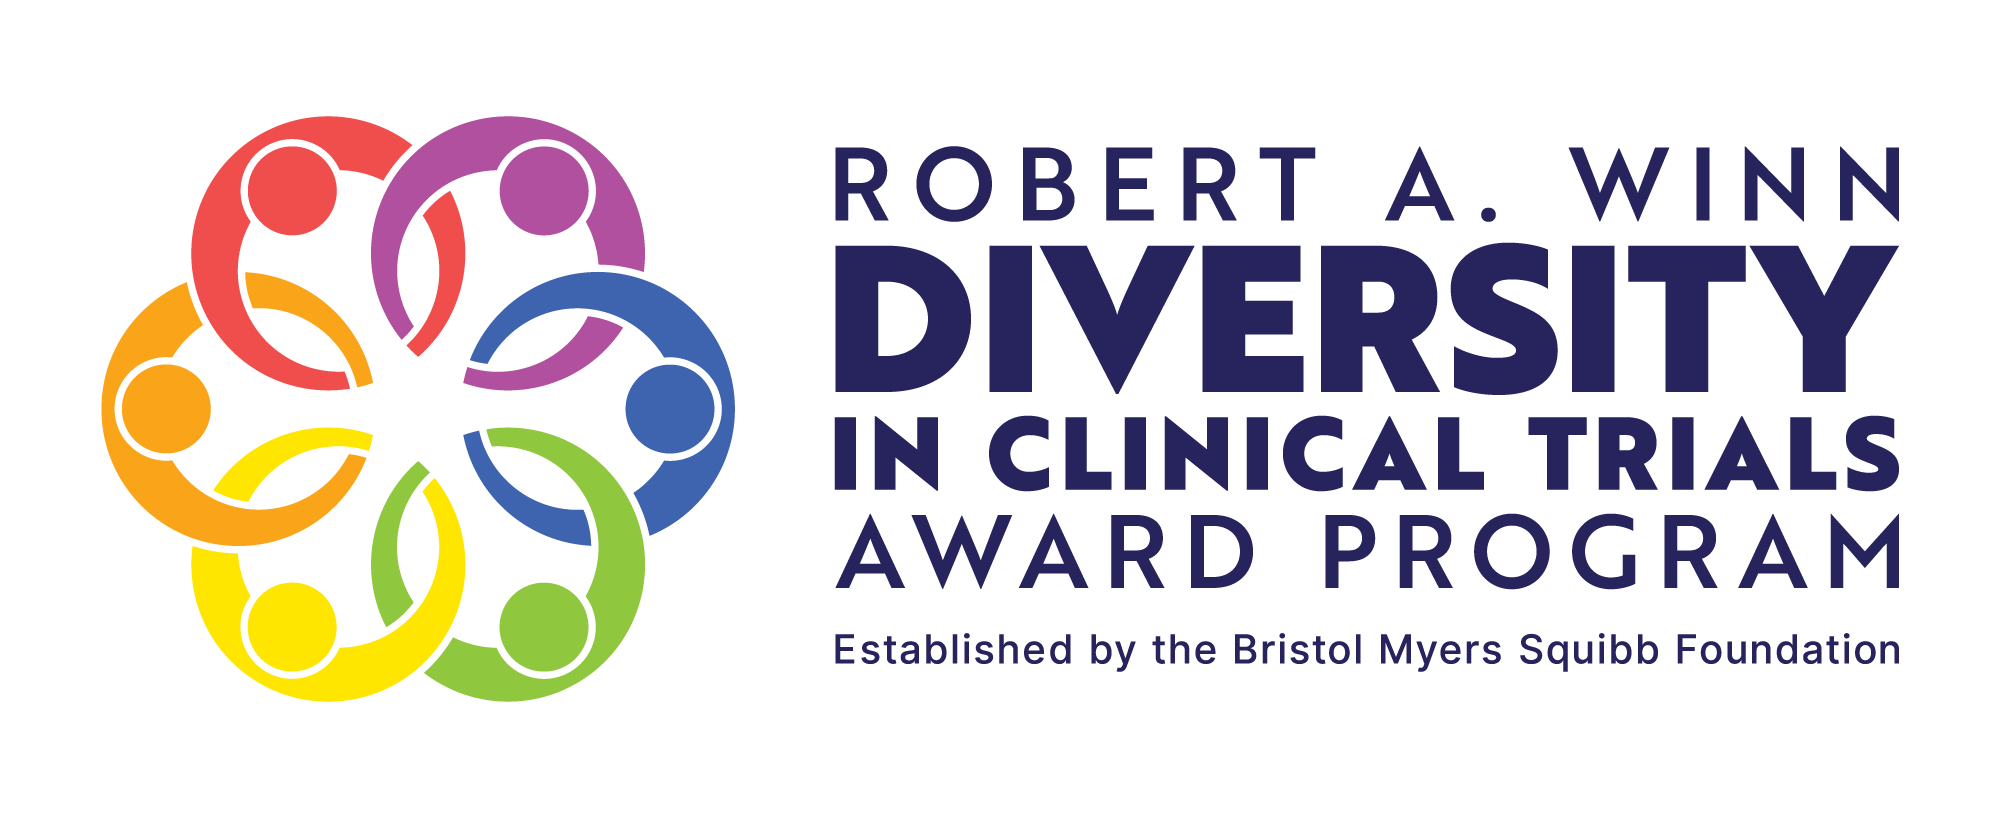 Robert A. Winn Diversity in Clinical Trials Award Program logo